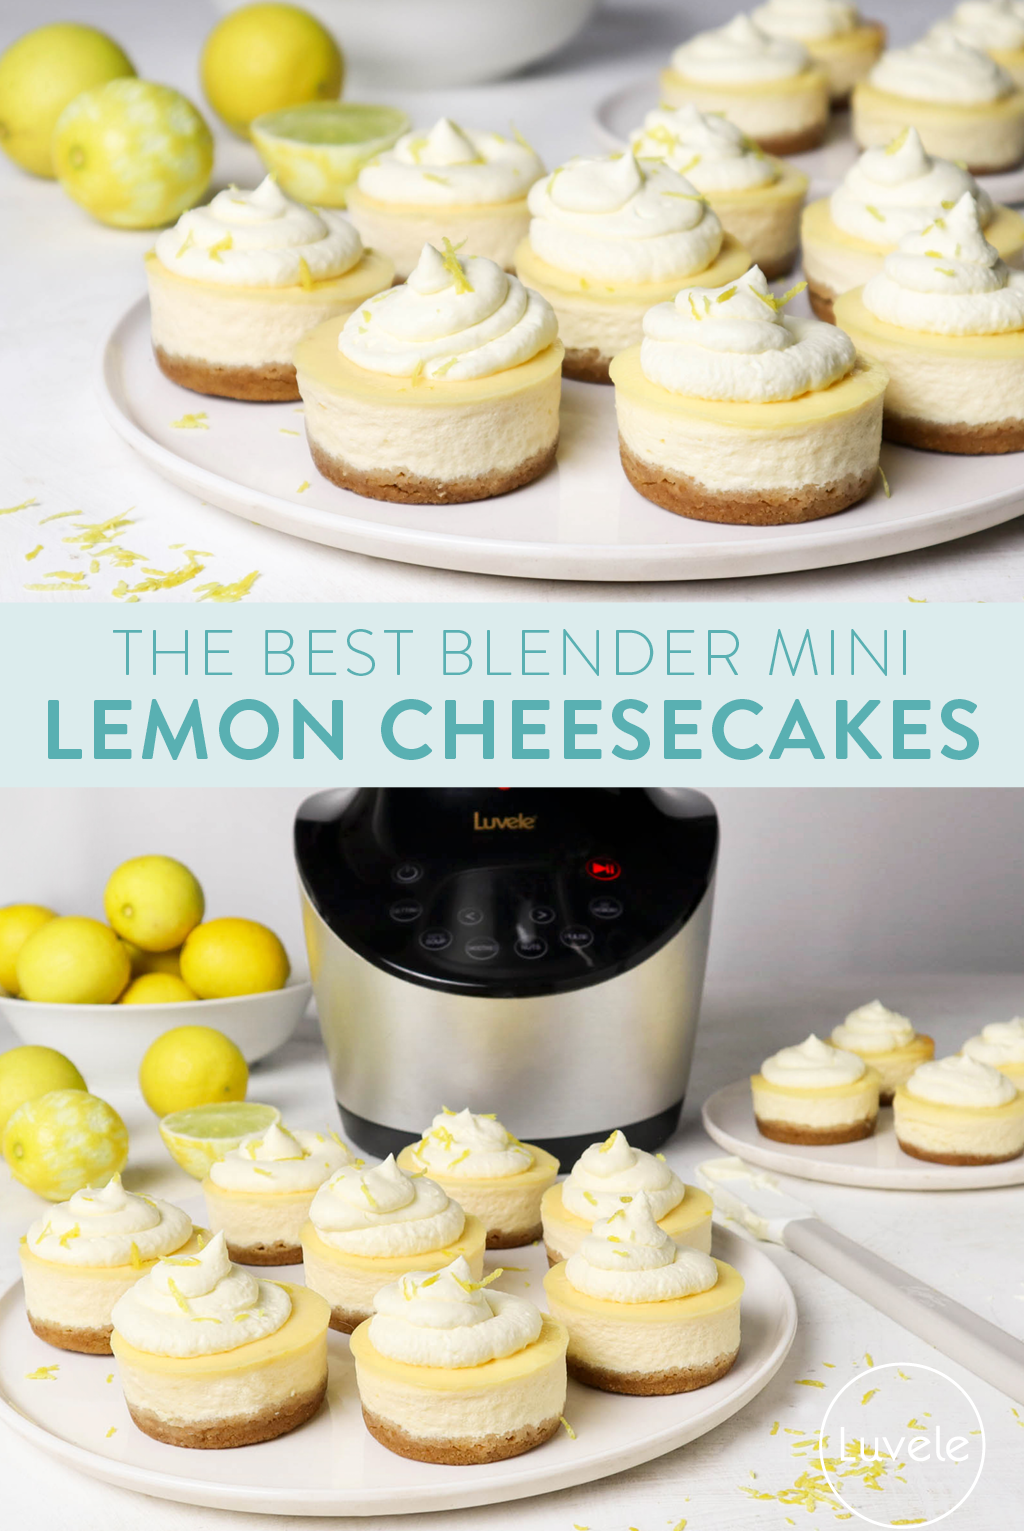 Best blender mini lemon cheesecakes - Luvele UK